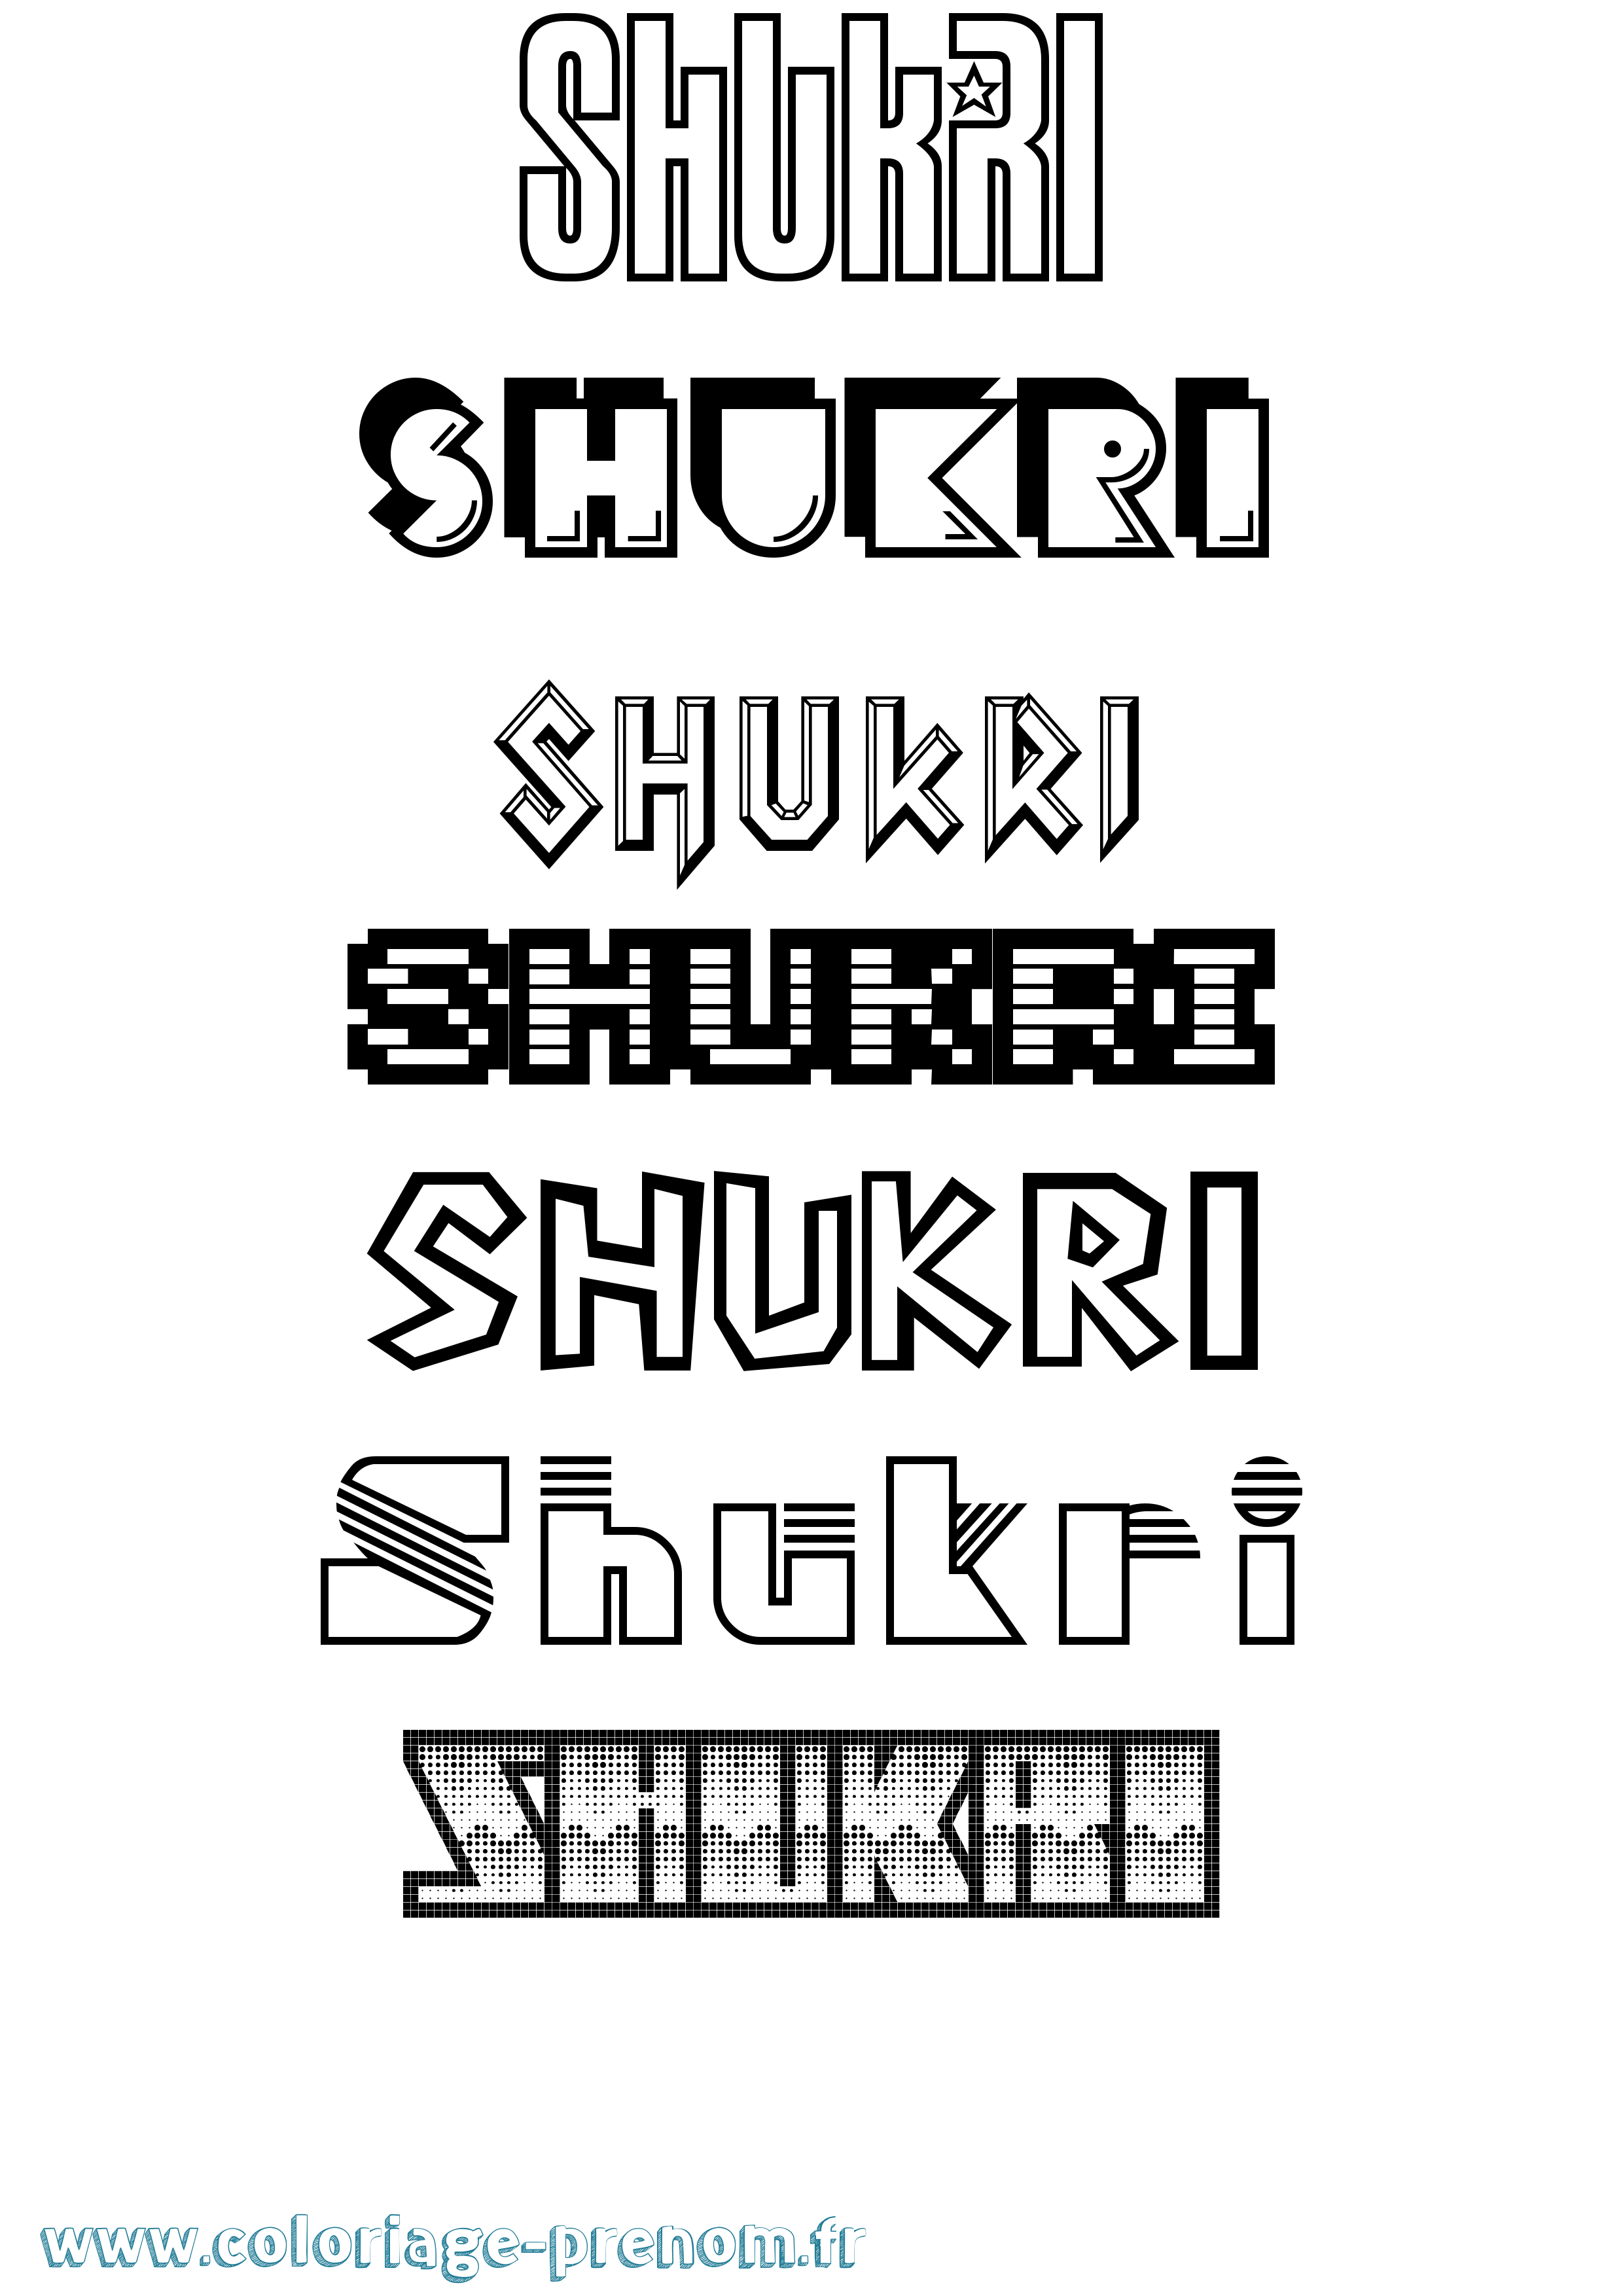 Coloriage prénom Shukri Jeux Vidéos